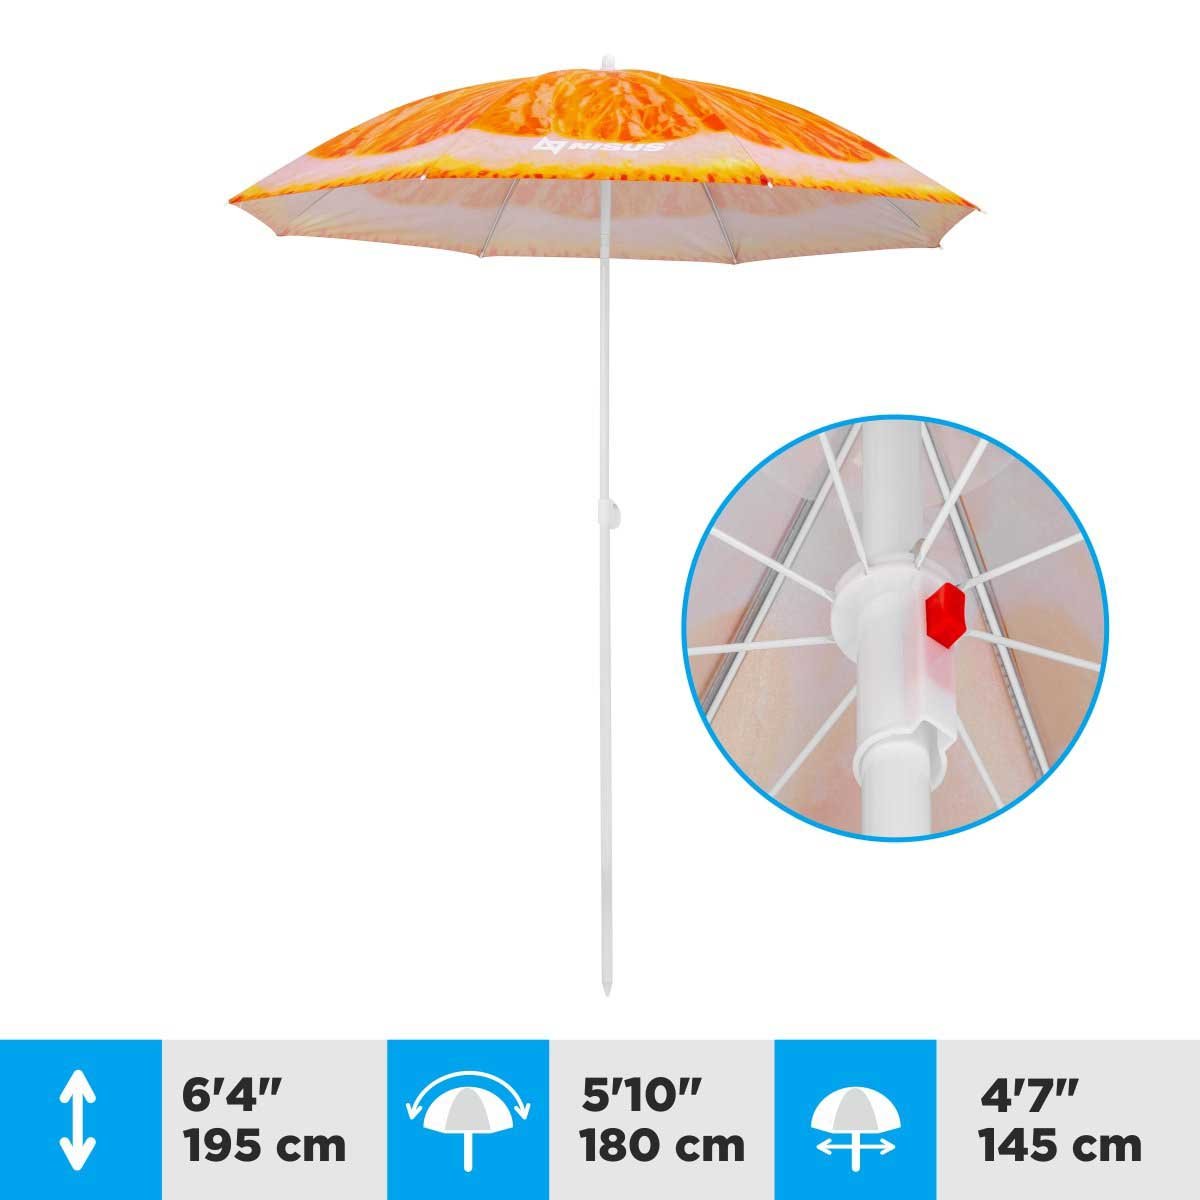 A 4.7 ft Orange Folding Tilting Beach Umbrella is 6.4 feet high